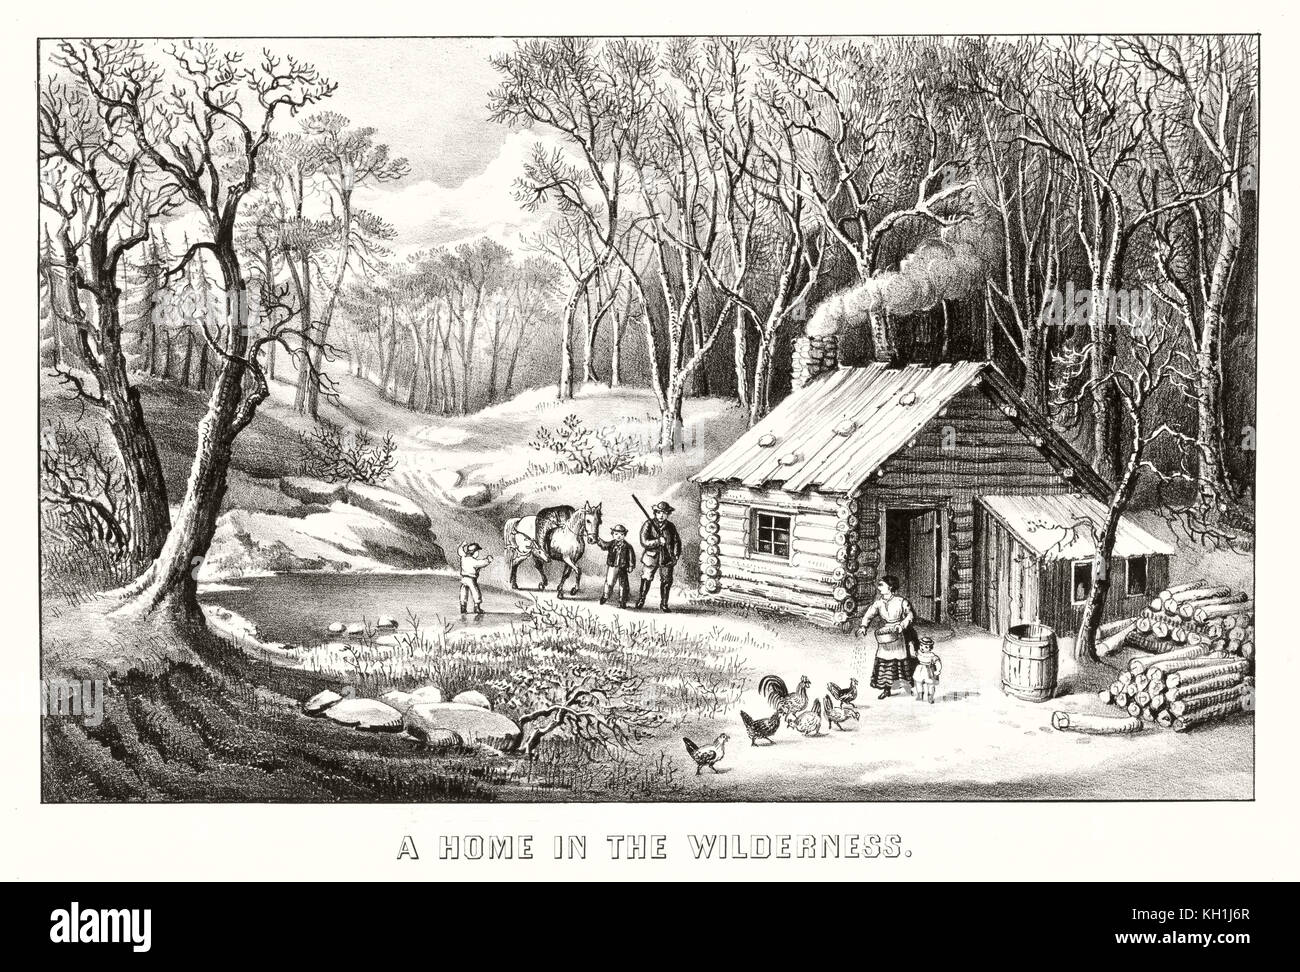 Ilustración de una vieja casa de madera en el bosque. Por Currier & Ives, publ. en Nueva York, 1870 Foto de stock